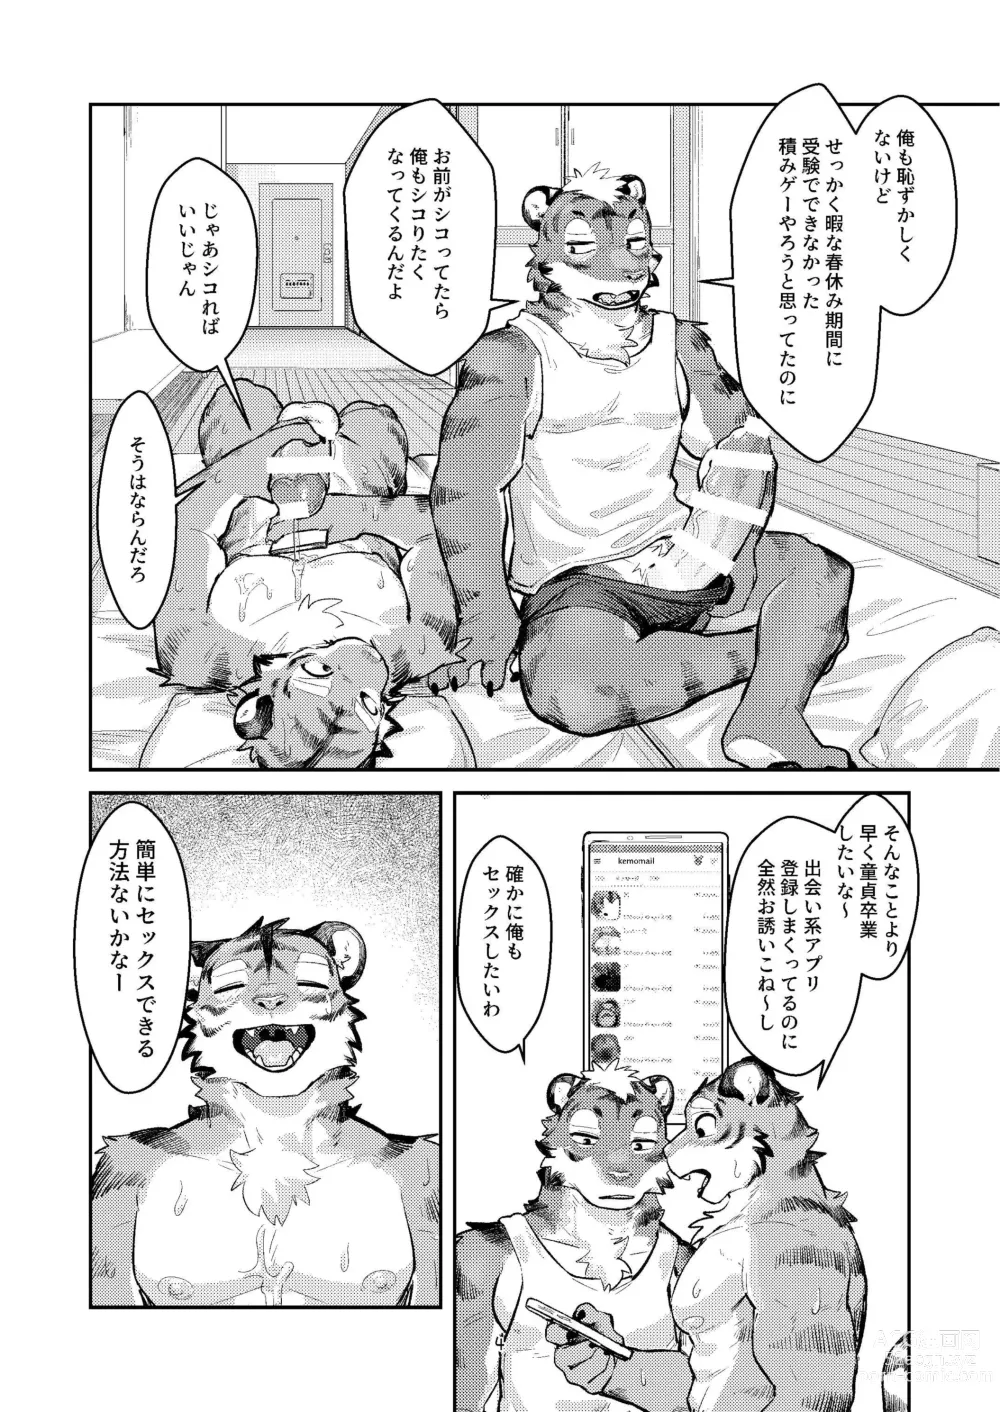 Page 4 of doujinshi Hajimete wa Tora no Ana de!